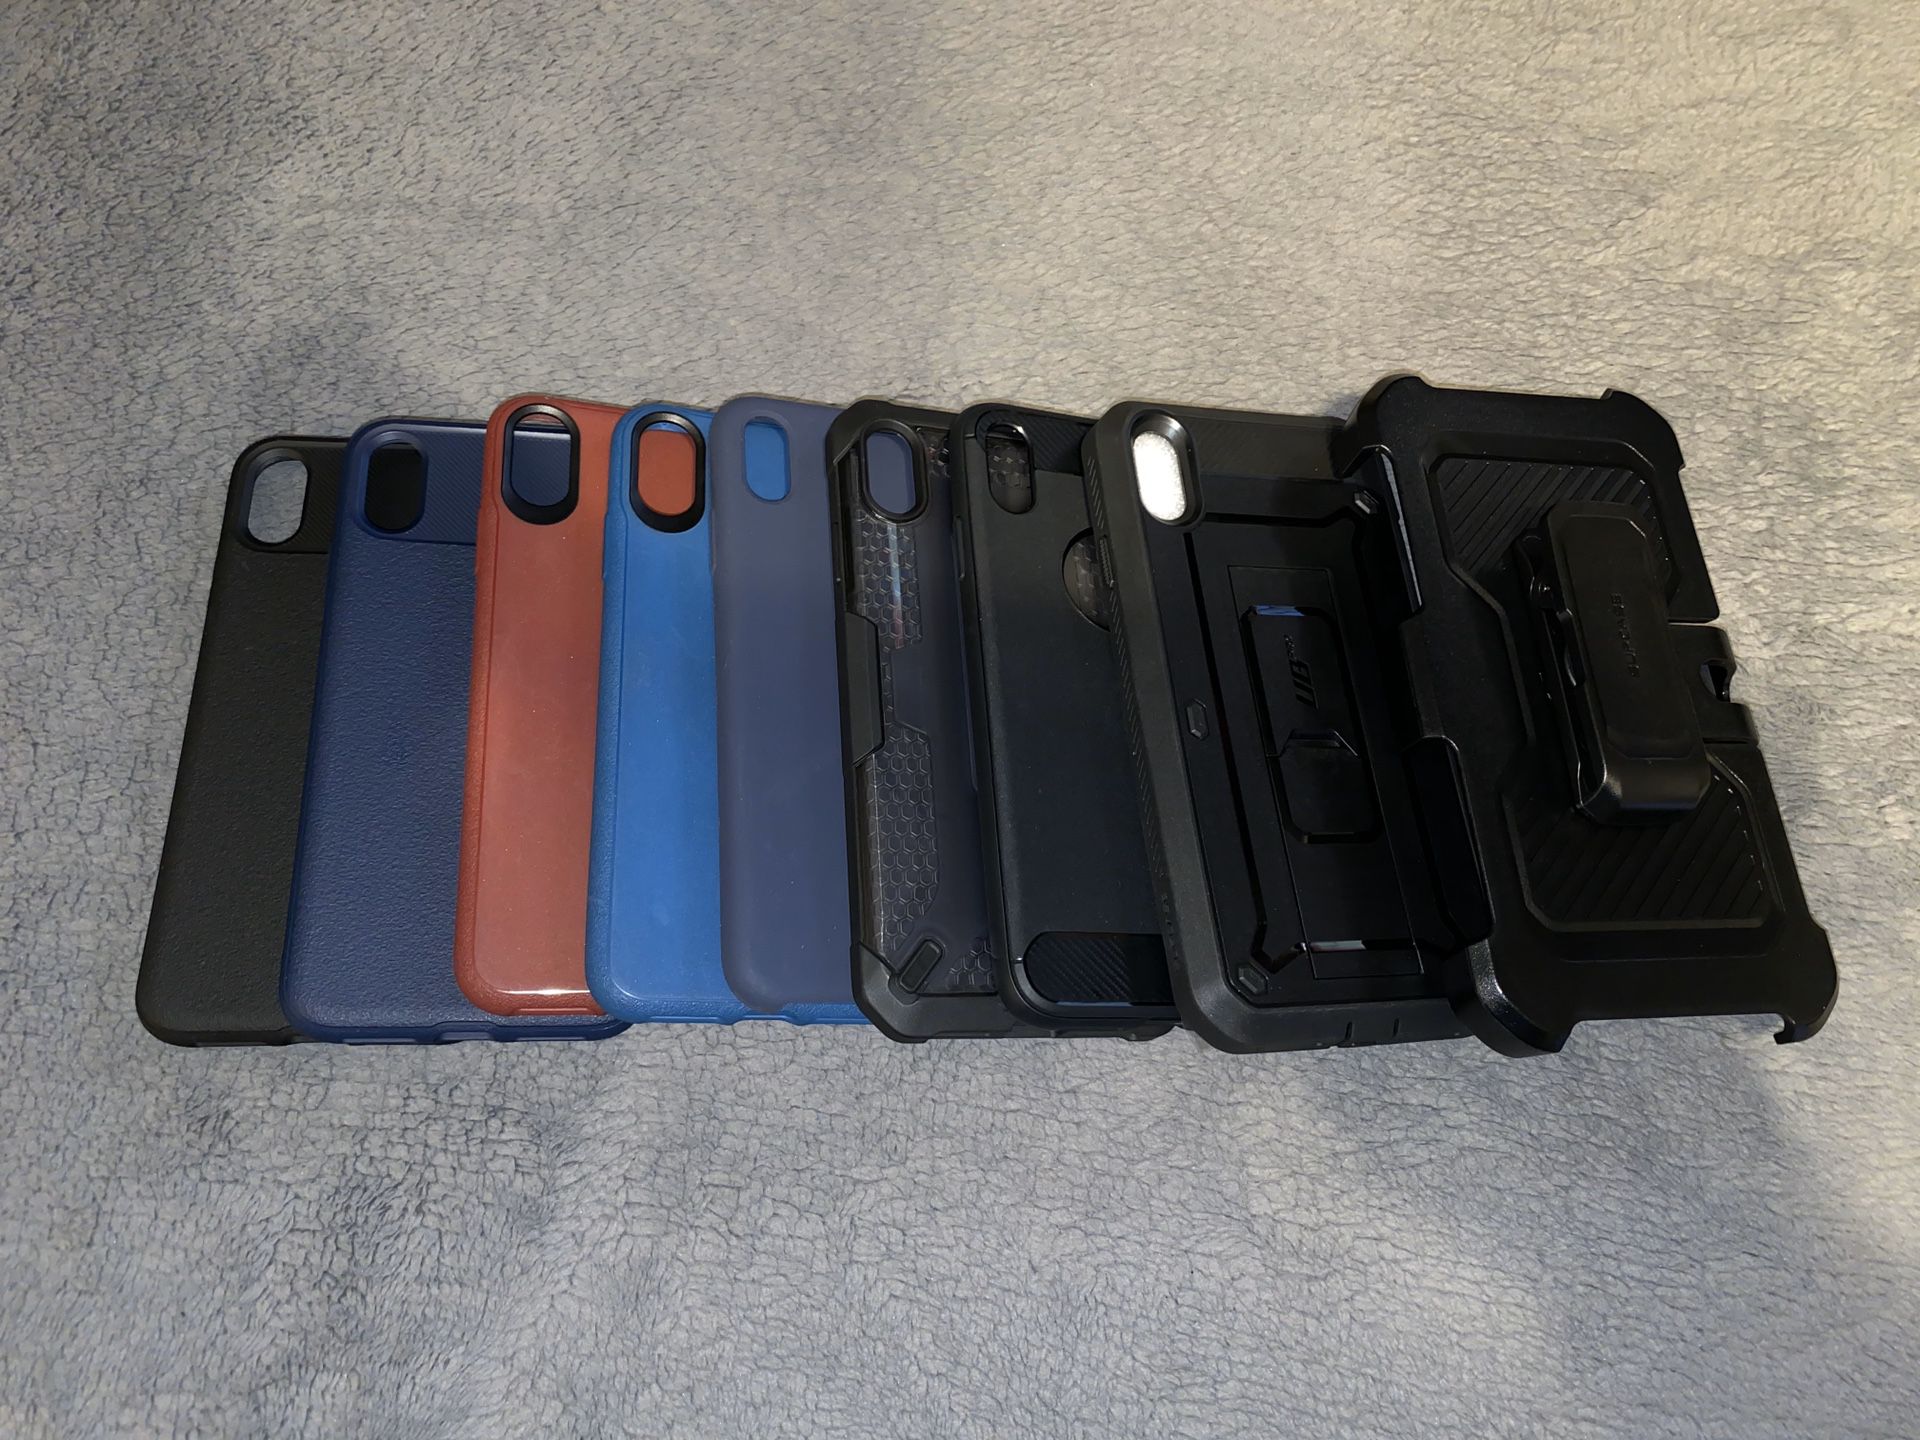 8 iPhone xs Max cases